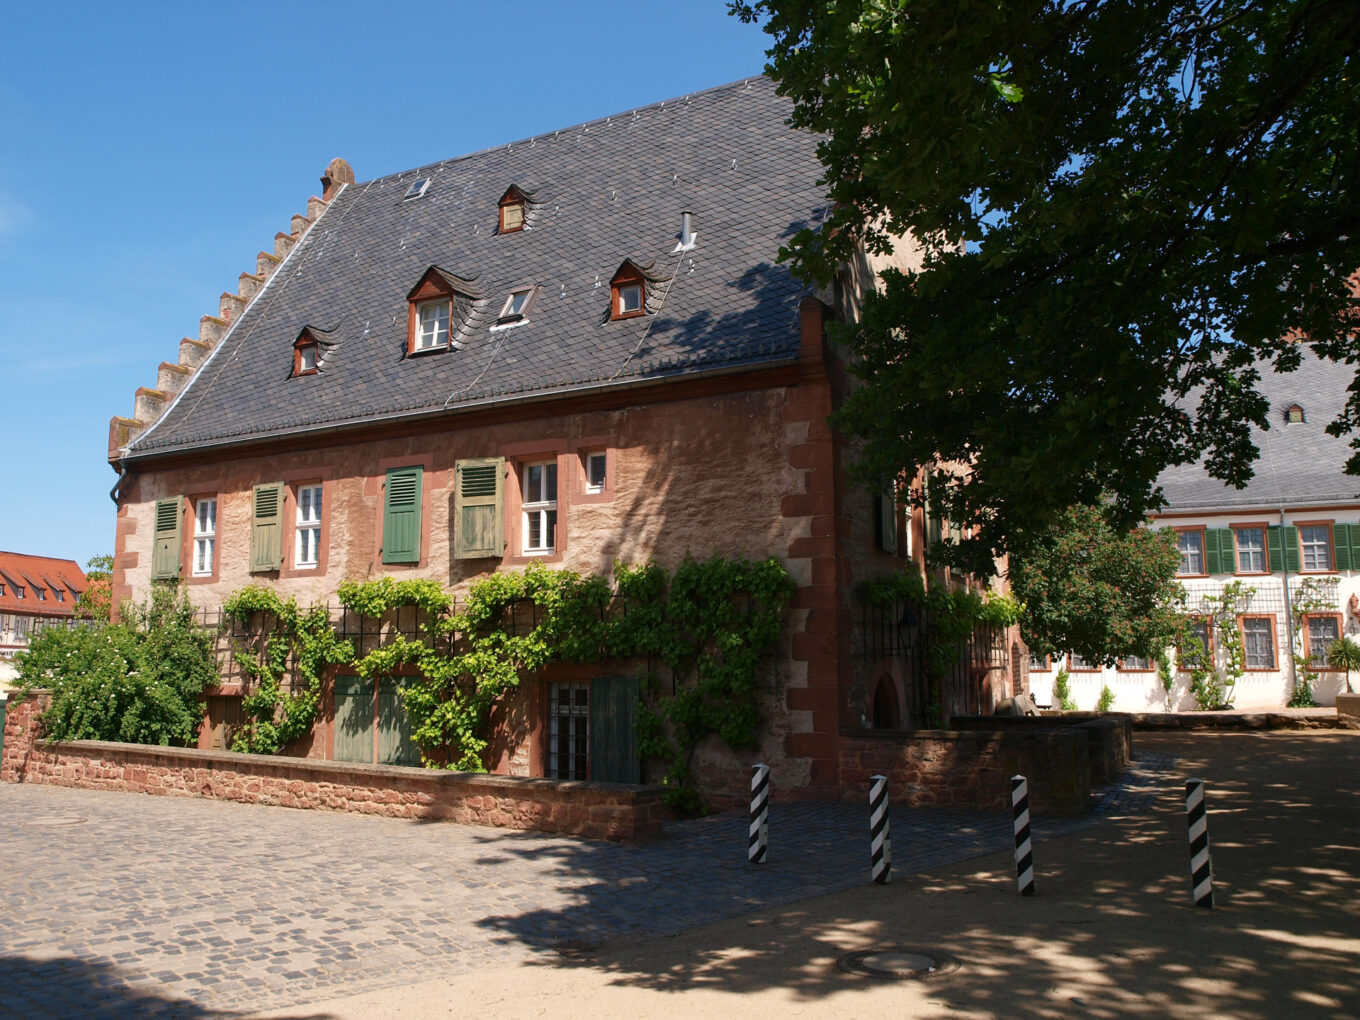 Kloster Seligenstadt, Klostermühle